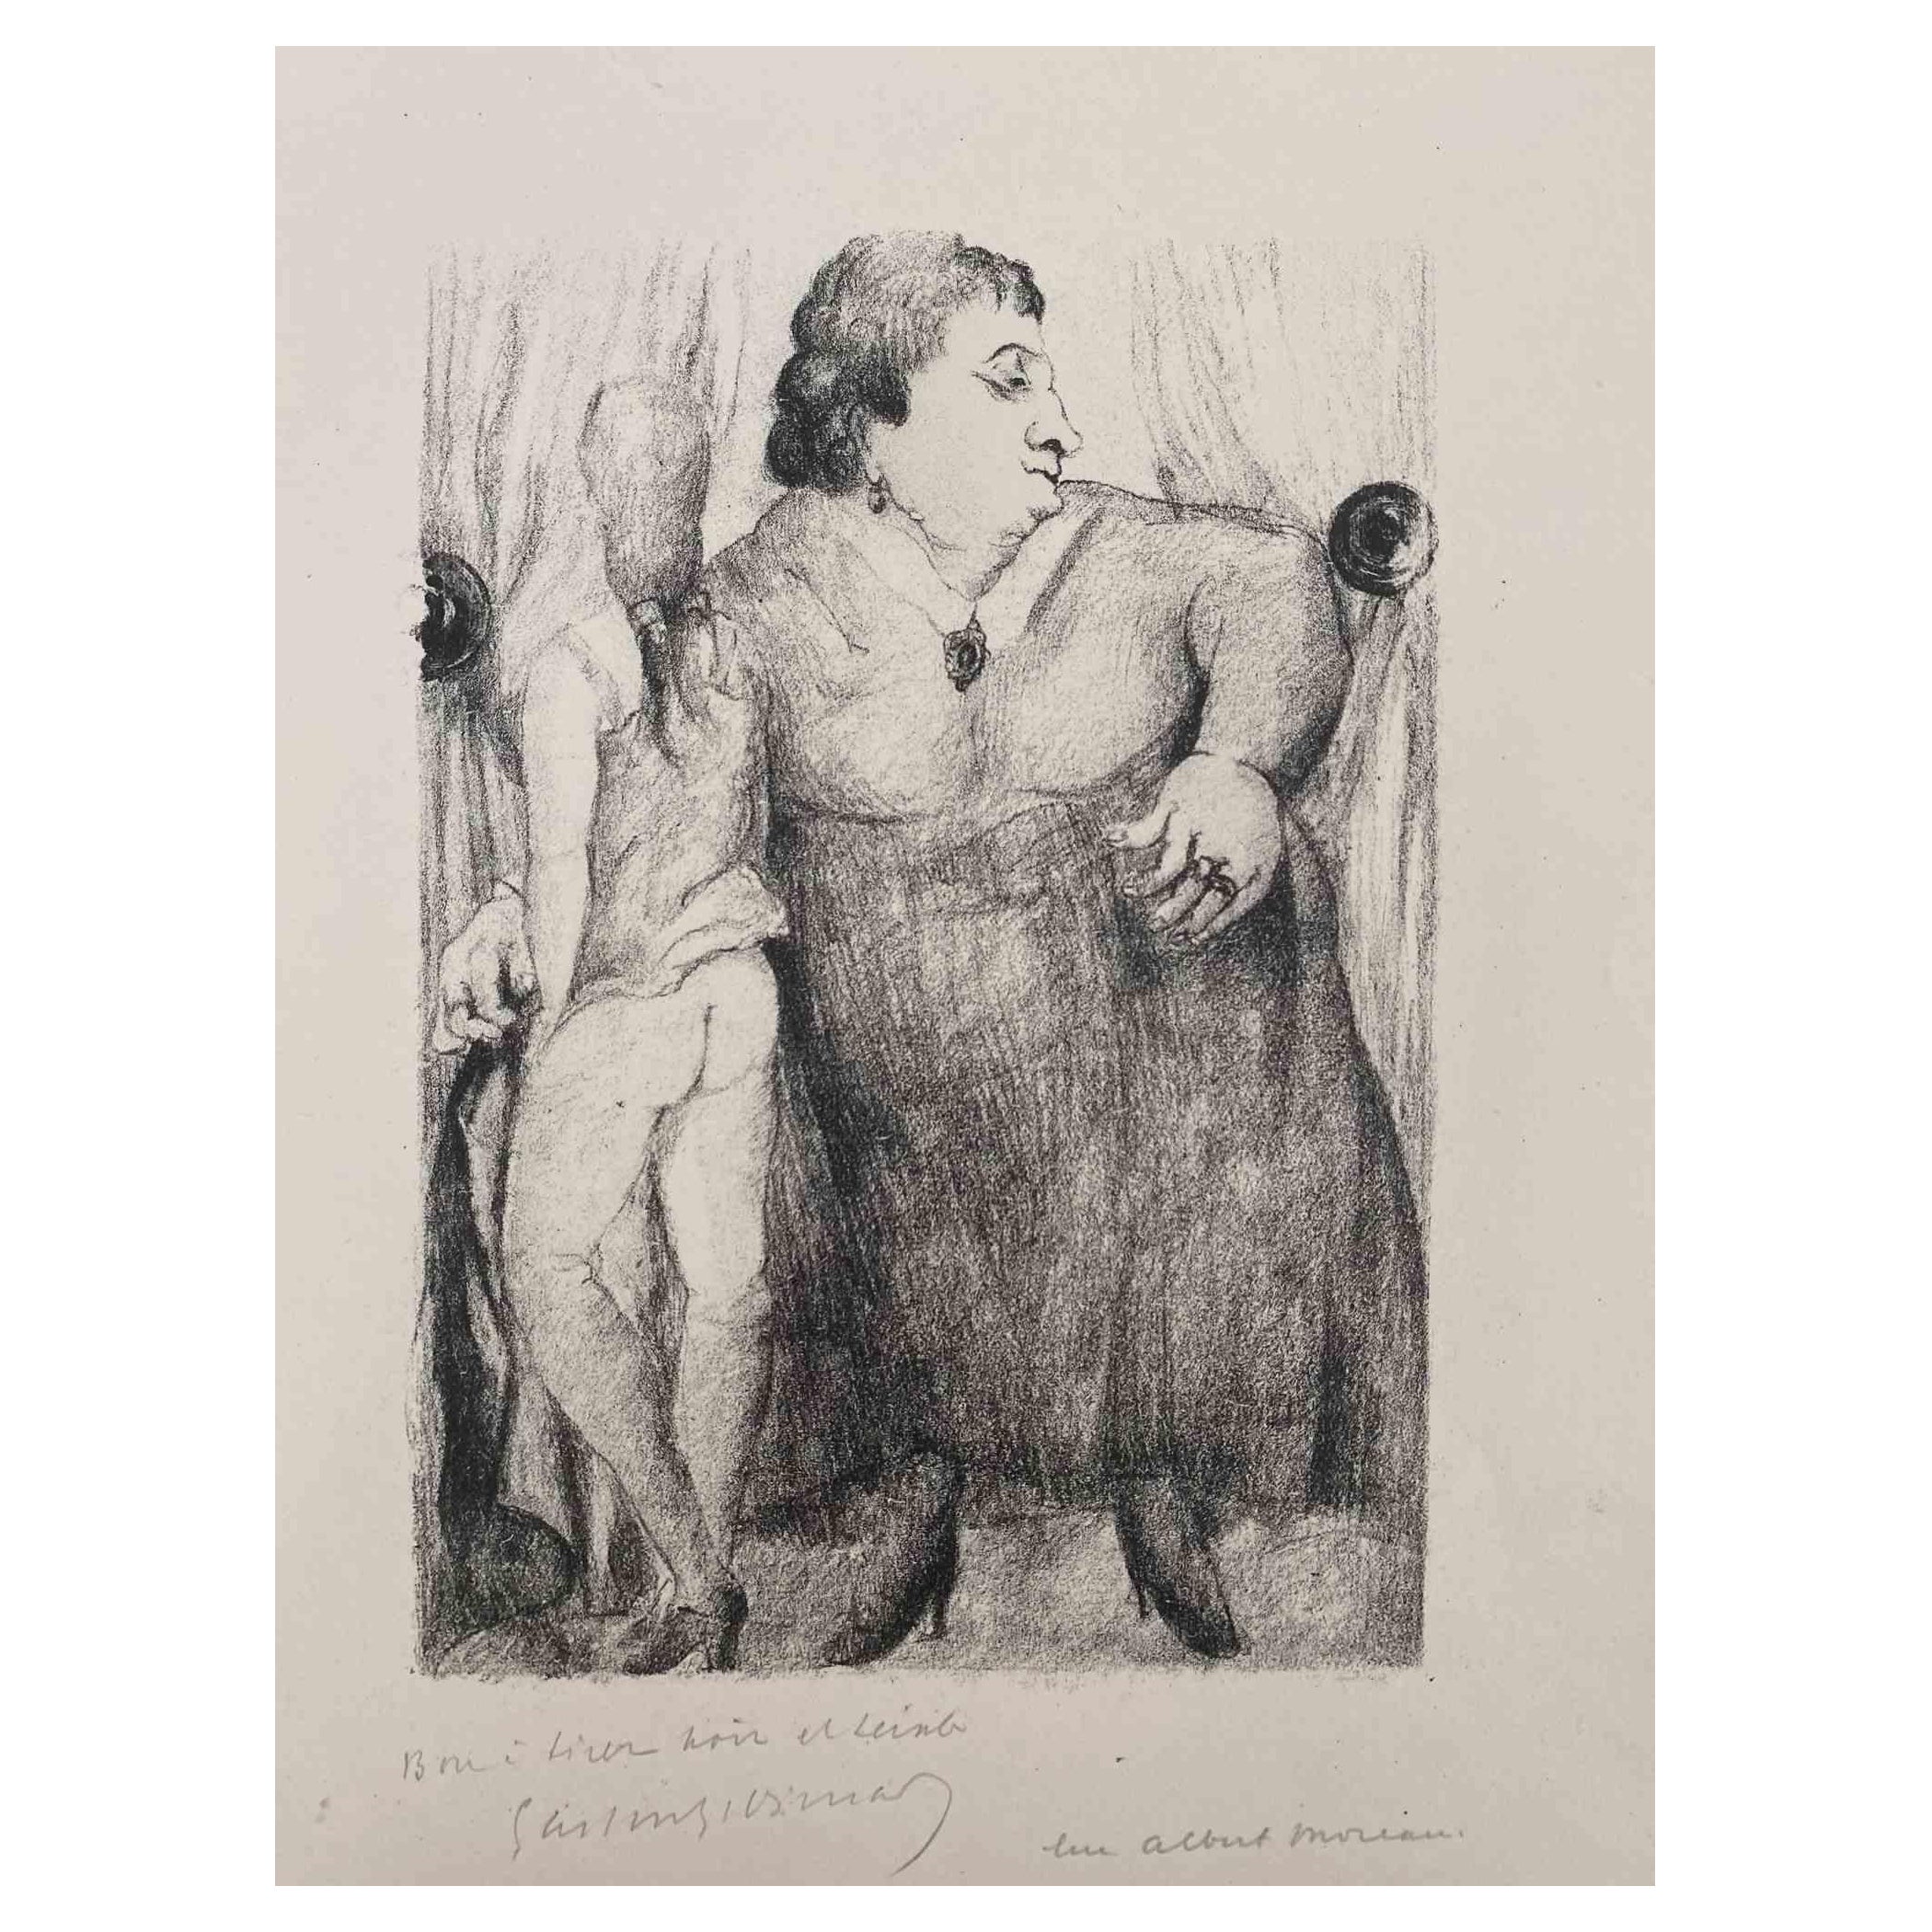 Zwei Frauen ist eine Original-Lithographie auf elfenbeinfarbenem Papier von Luc Albert Moreau.

Das Kunstwerk ist in gutem Zustand.

Handsigniert auf der Unterseite. 

Luc-Albert Moreau (1882-1948) ist ein französischer Maler, Graveur, Lithograf und